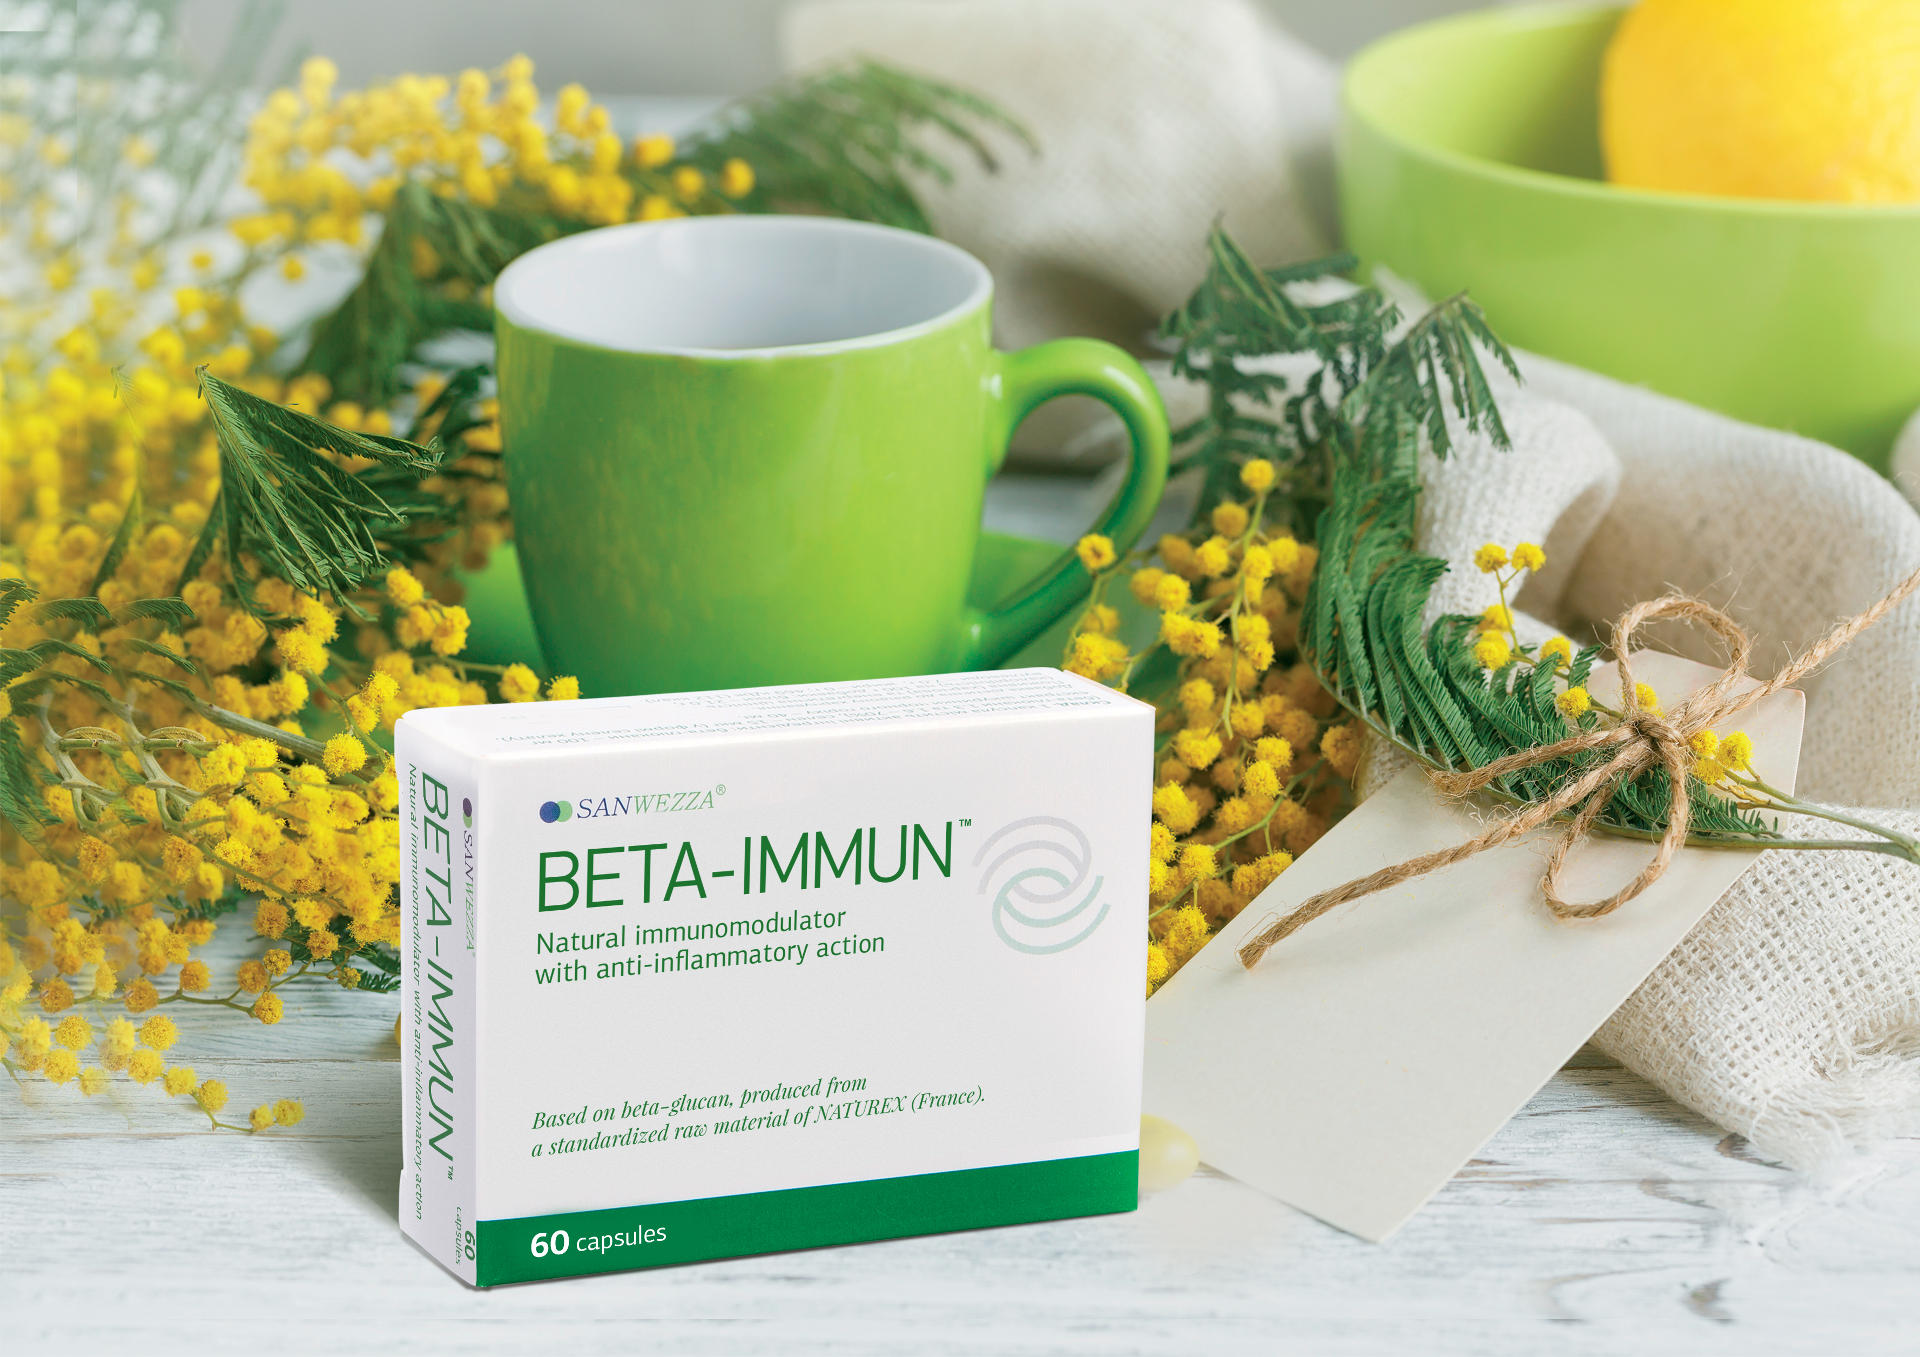 Создание дизайна медицинской упаковки Бета-иммун, Beta-Immun medical packaging design